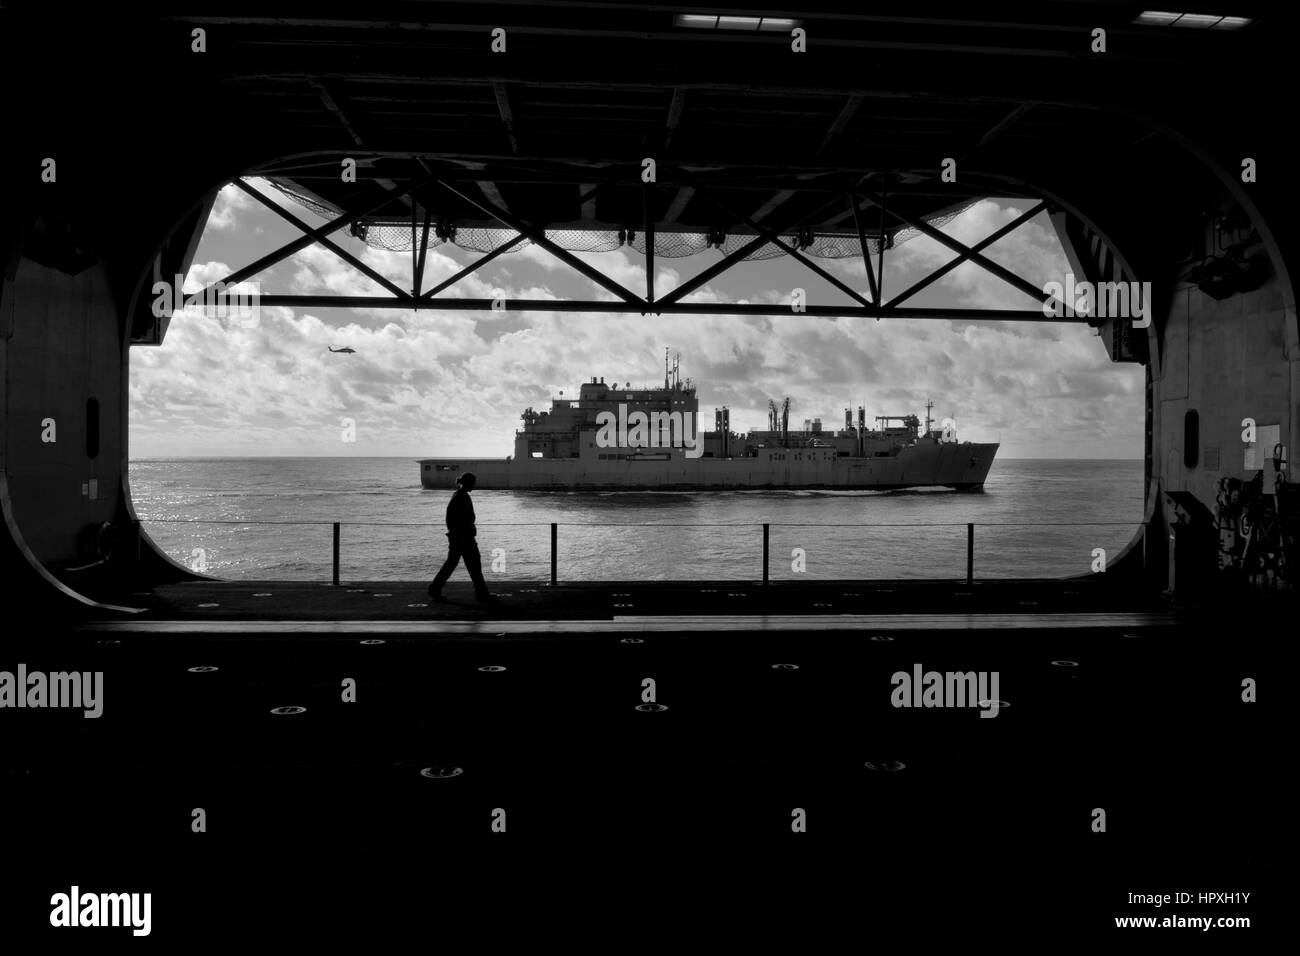 Vista del transporte marítimo de carga seca de comandos militares y municiones buque USNS Robert E. Peary (T-AKE 5) desde el hangar bay del buque multipropósito de asalto anfibio USS Iwo Jima (LHD 7), 2012. Imagen cortesía de Scott Youngblood/US Navy. Foto de stock